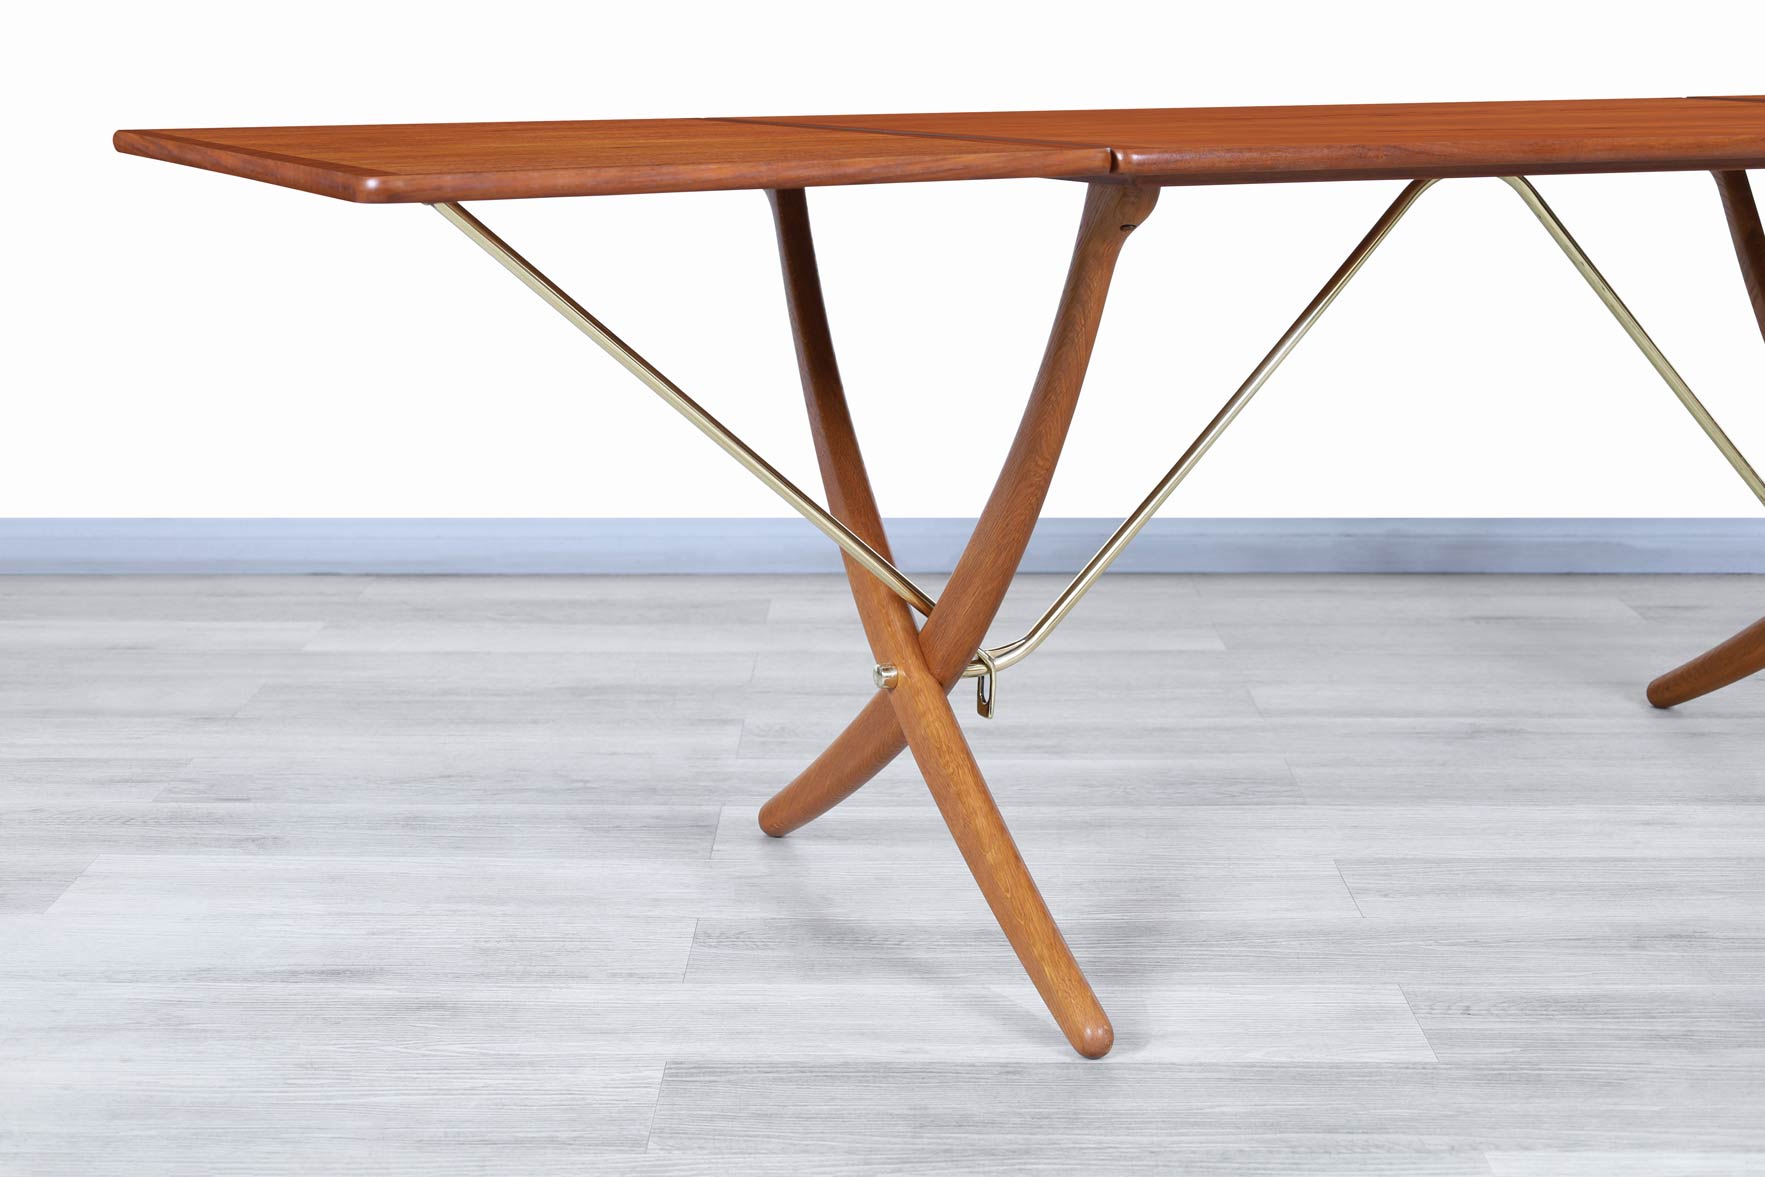 Danish Modern AT-304 Teak and Oak Dining Table by Hans J. Wegner